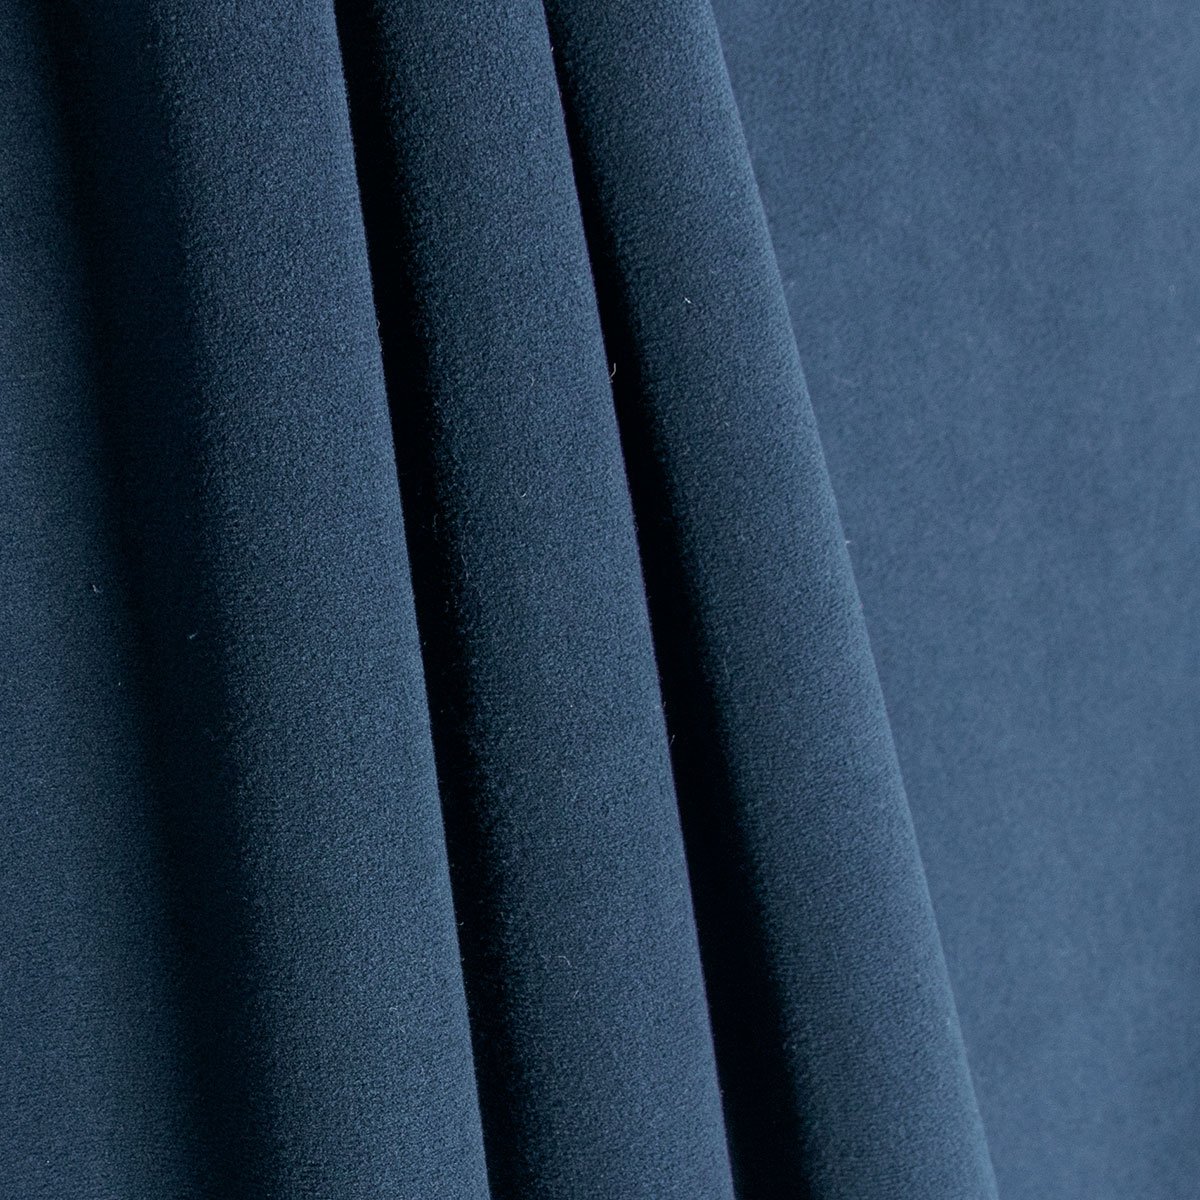 Velvet Fabric for Upholstery: A Guide to the Best Types of Velvet Fabrics